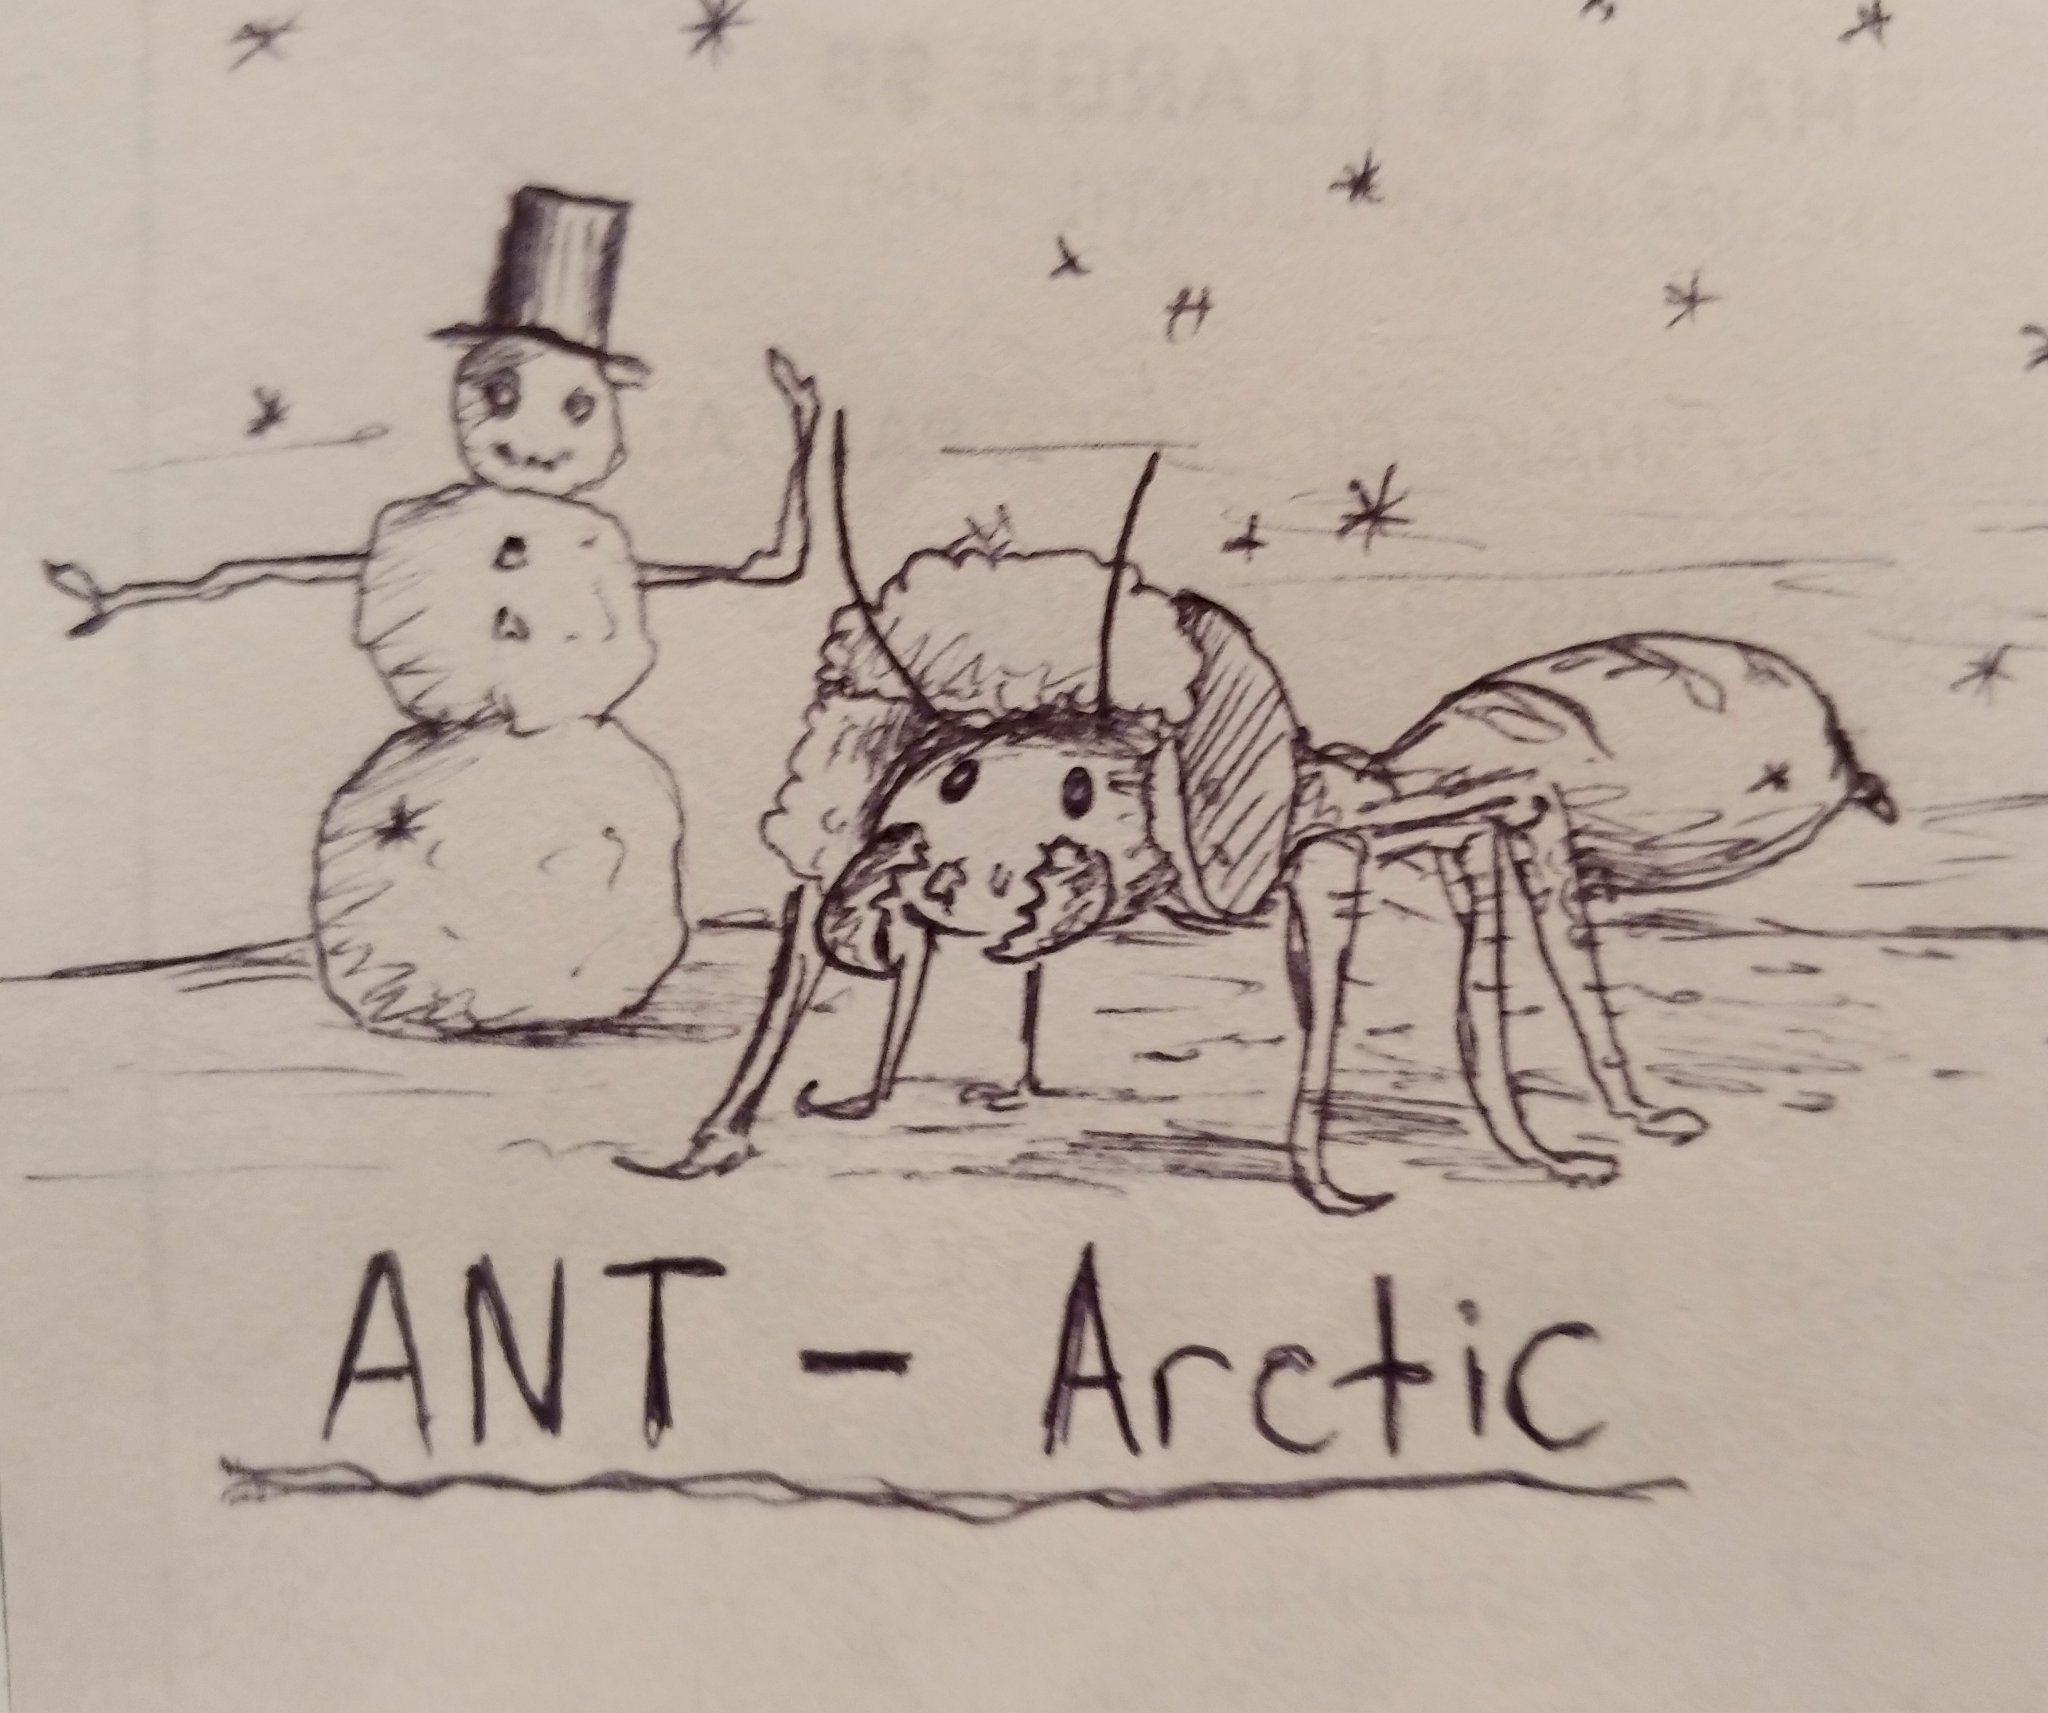 OC art: Ant-Arctic - meme